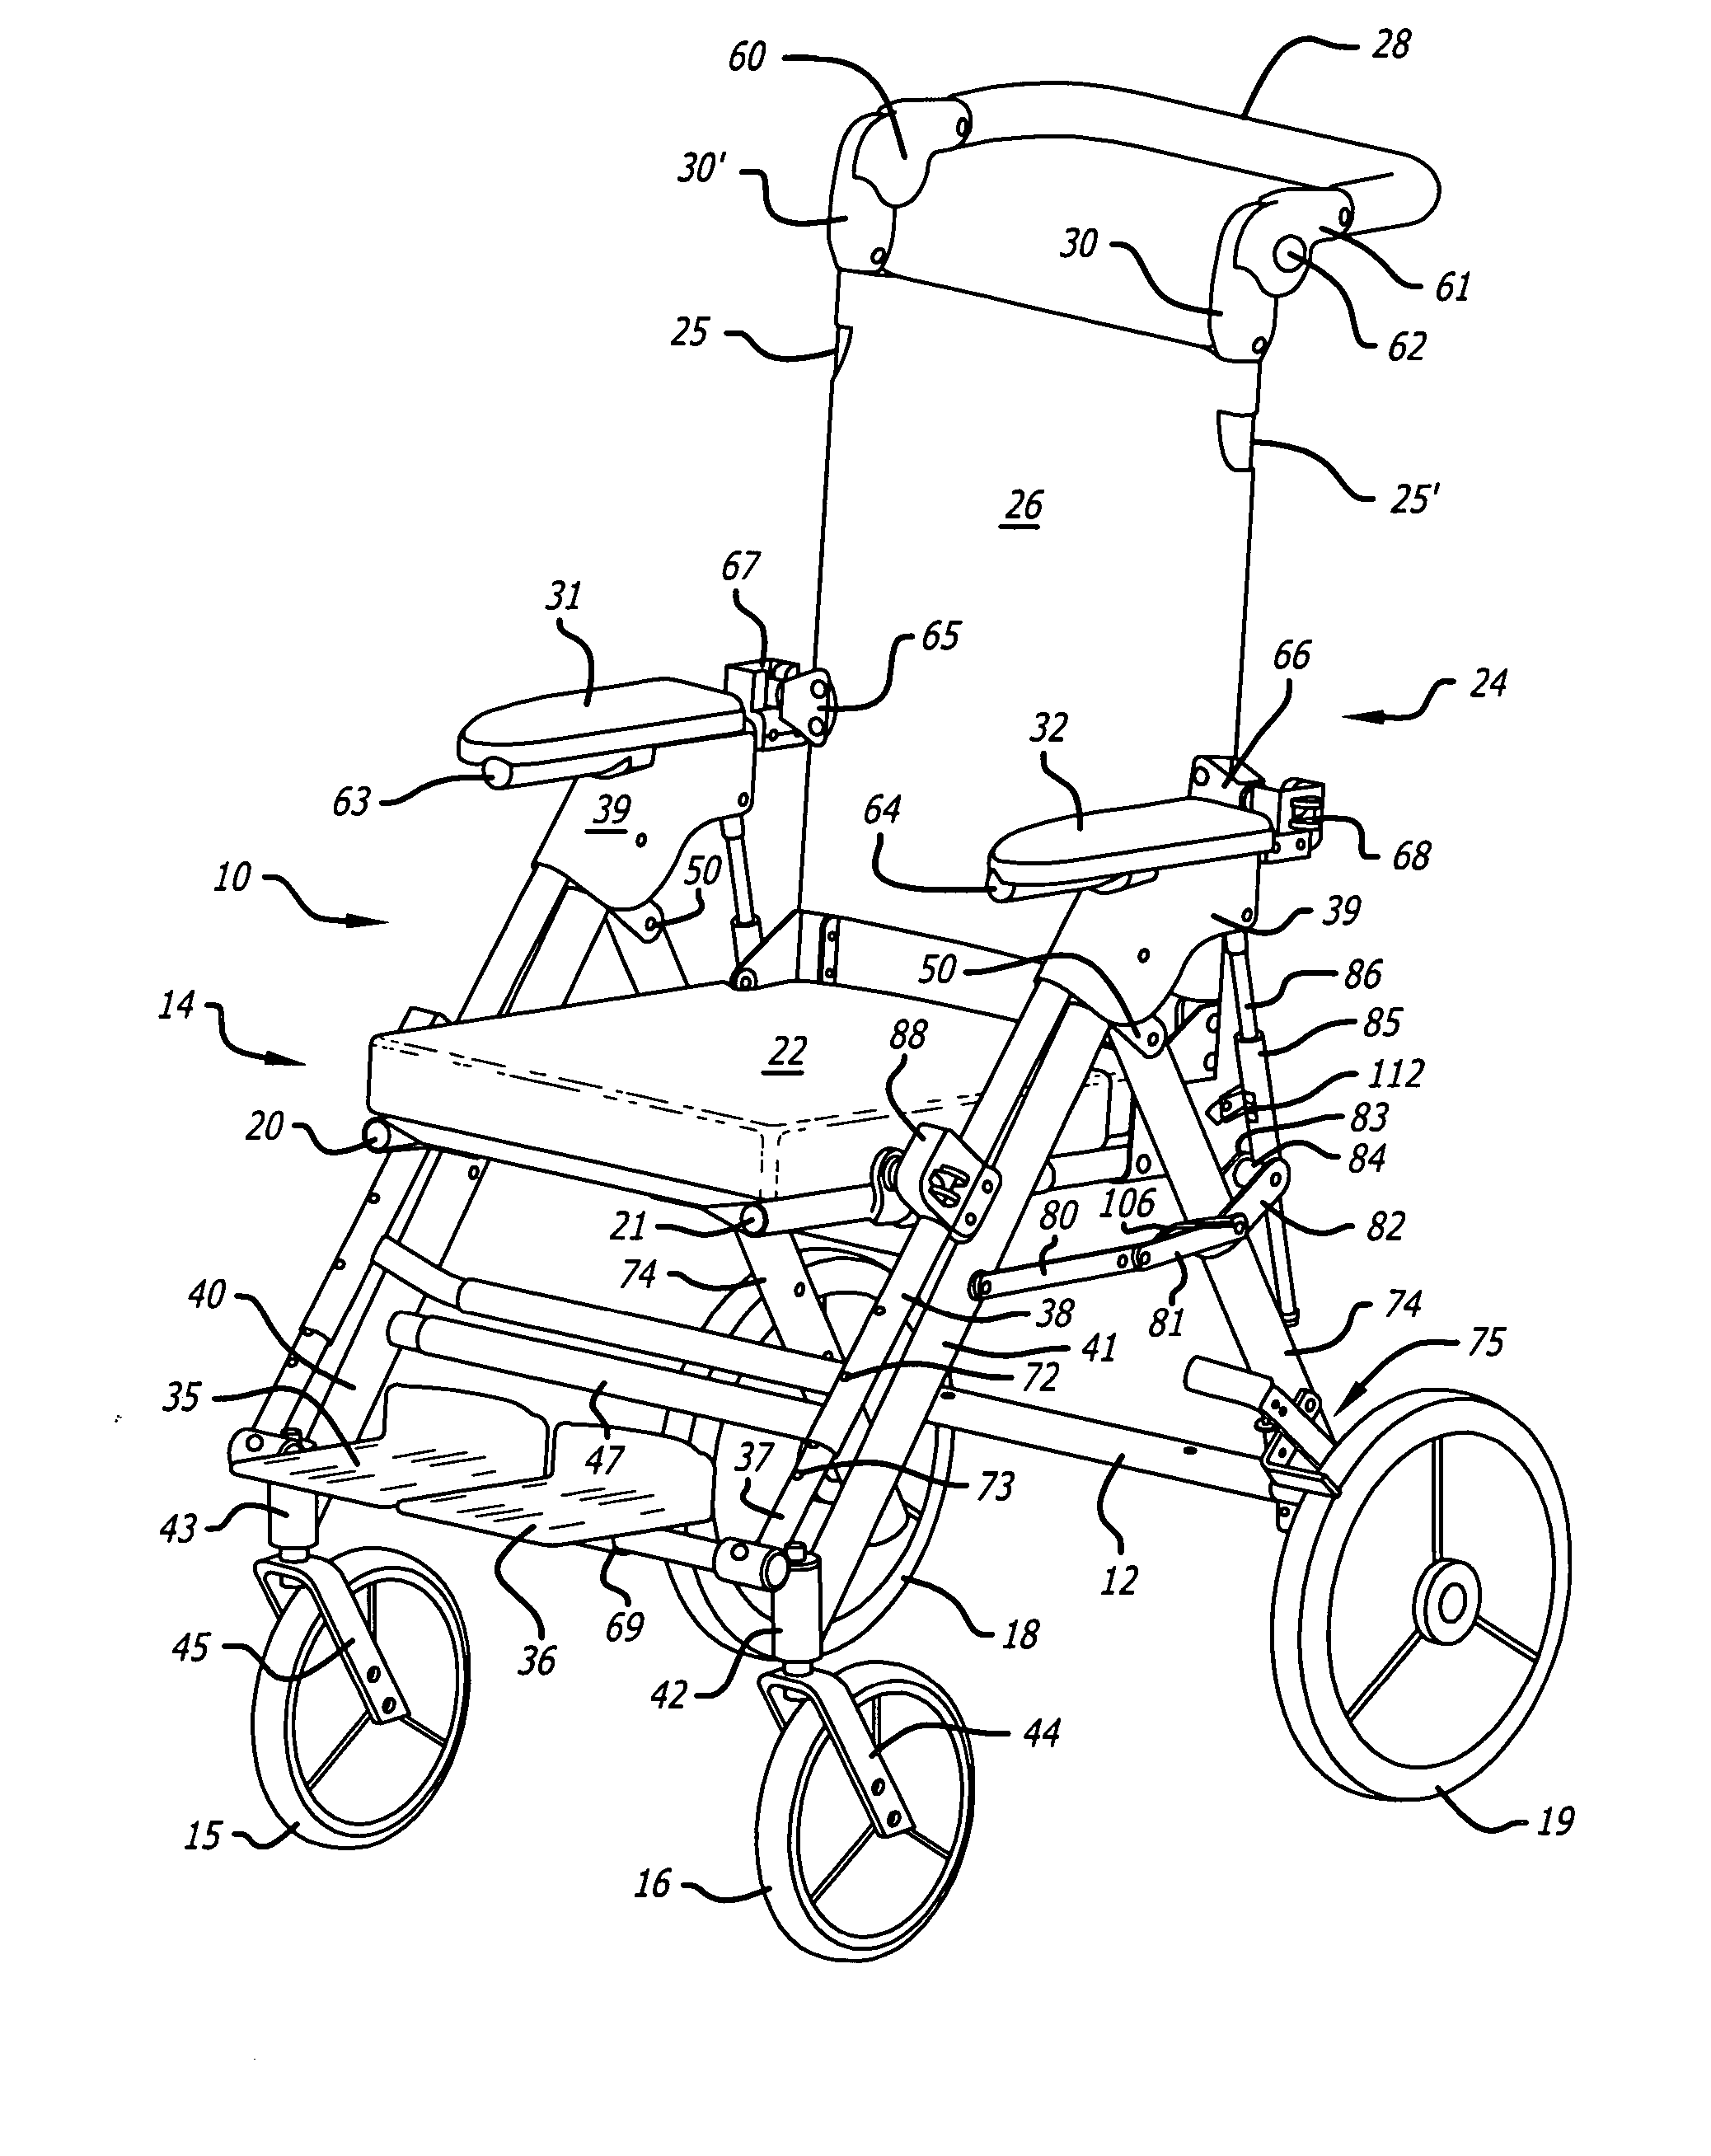 Center-of-gravity tilt-in-space wheelchair